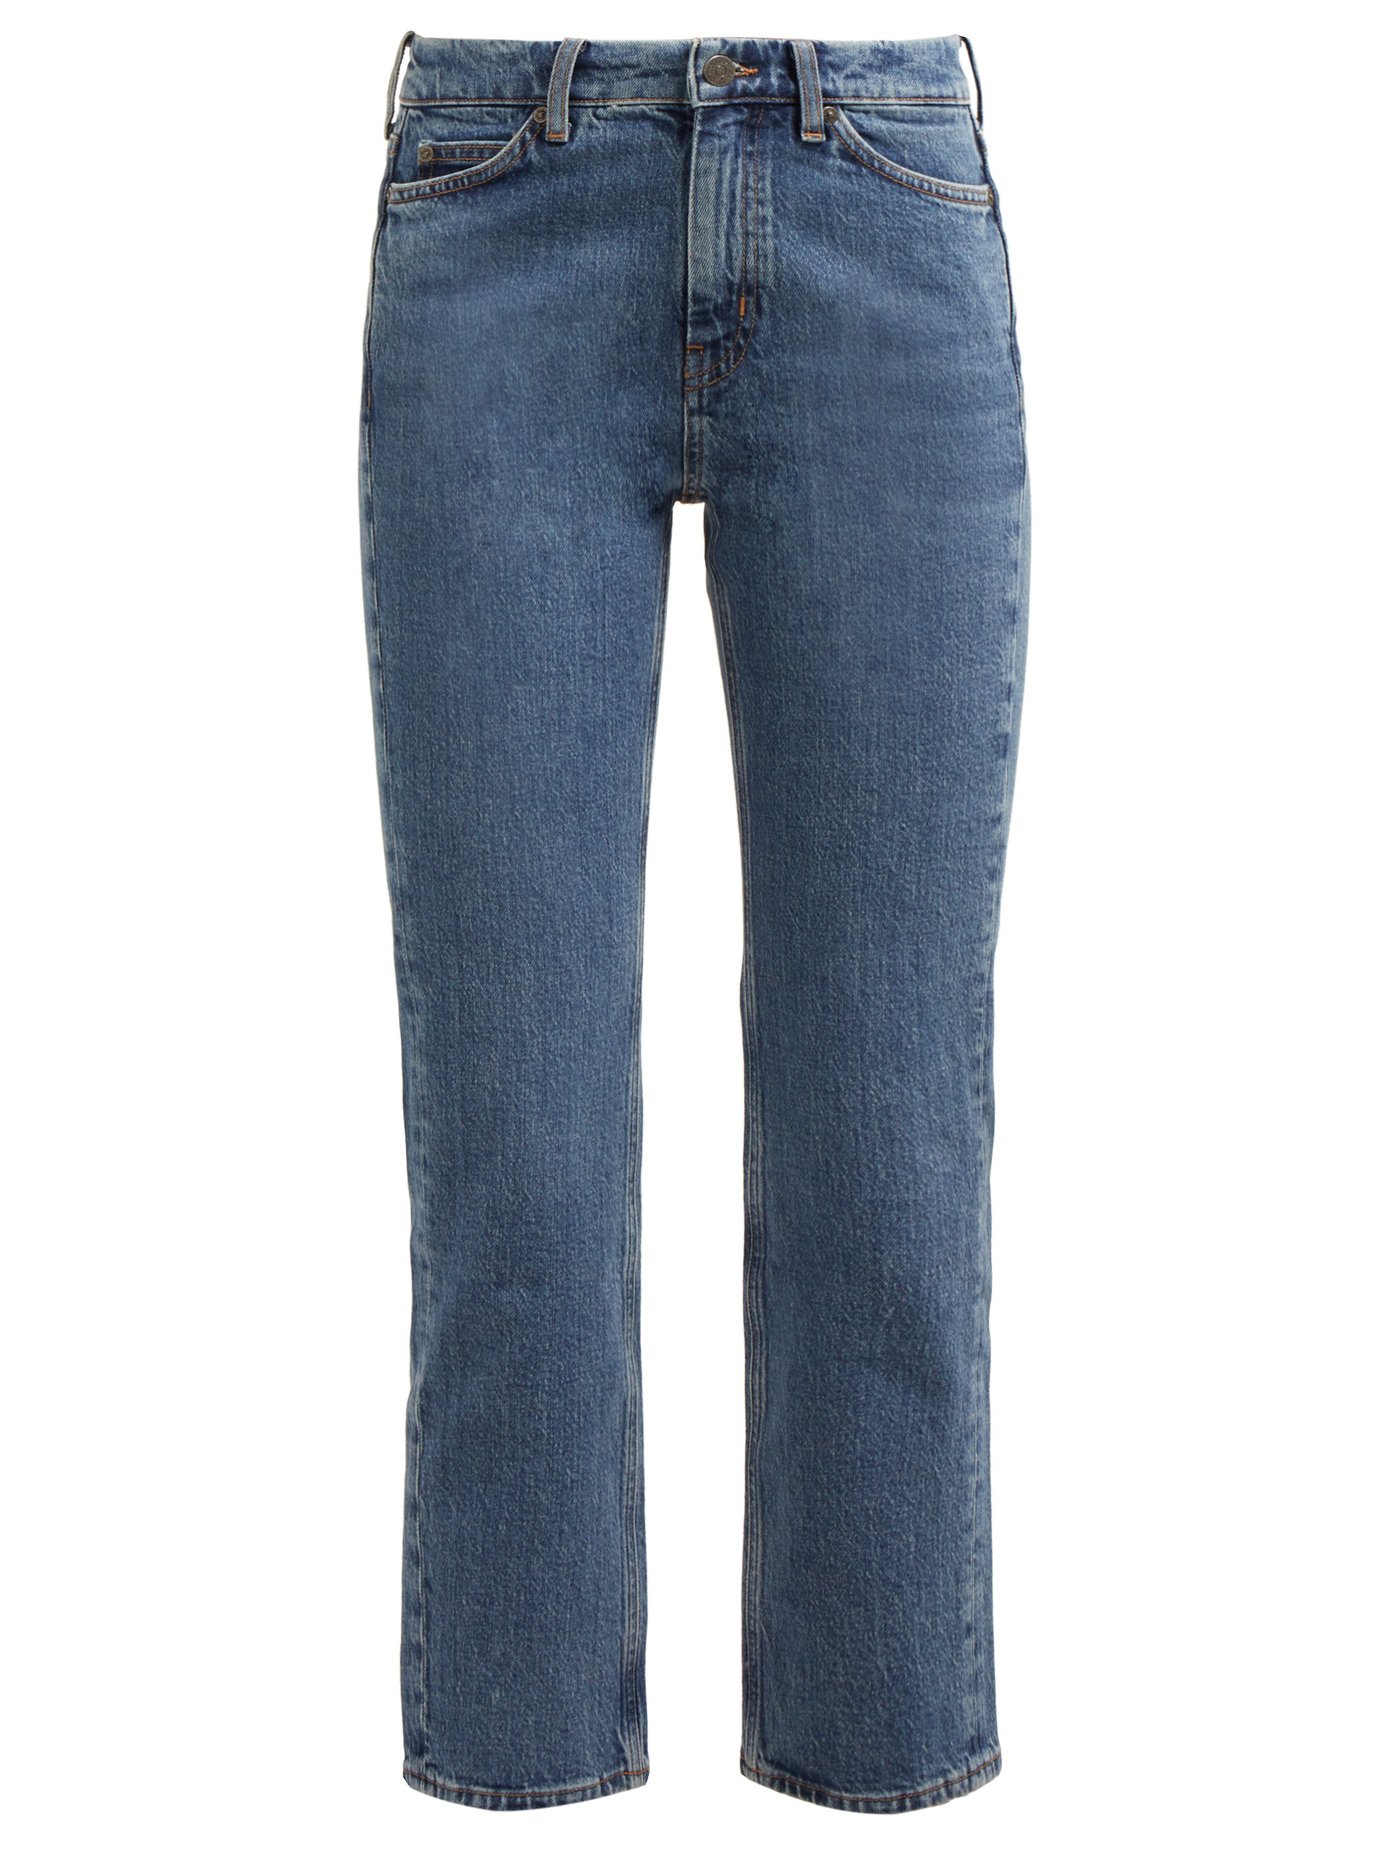 lee carpenter jeans 100 cotton